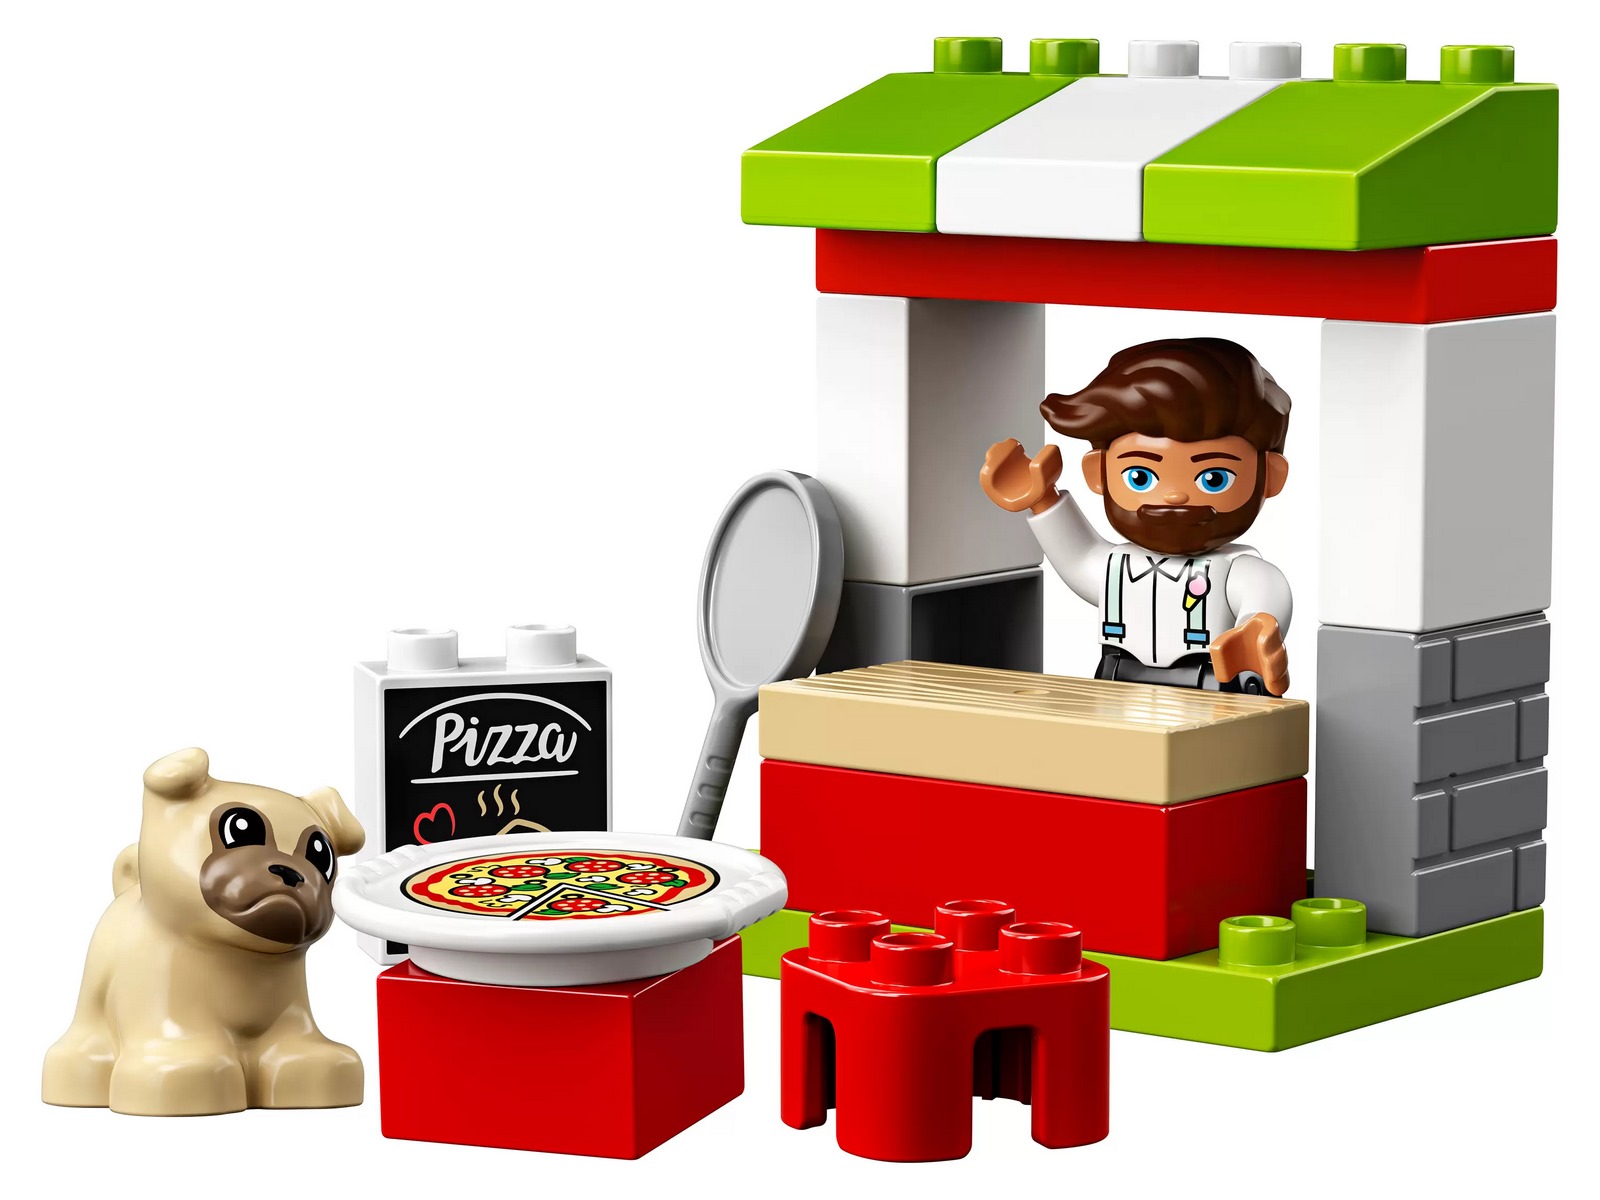 Конструктор LEGO Duplo Town «Киоск-пиццерия» 10927 / 18 деталей